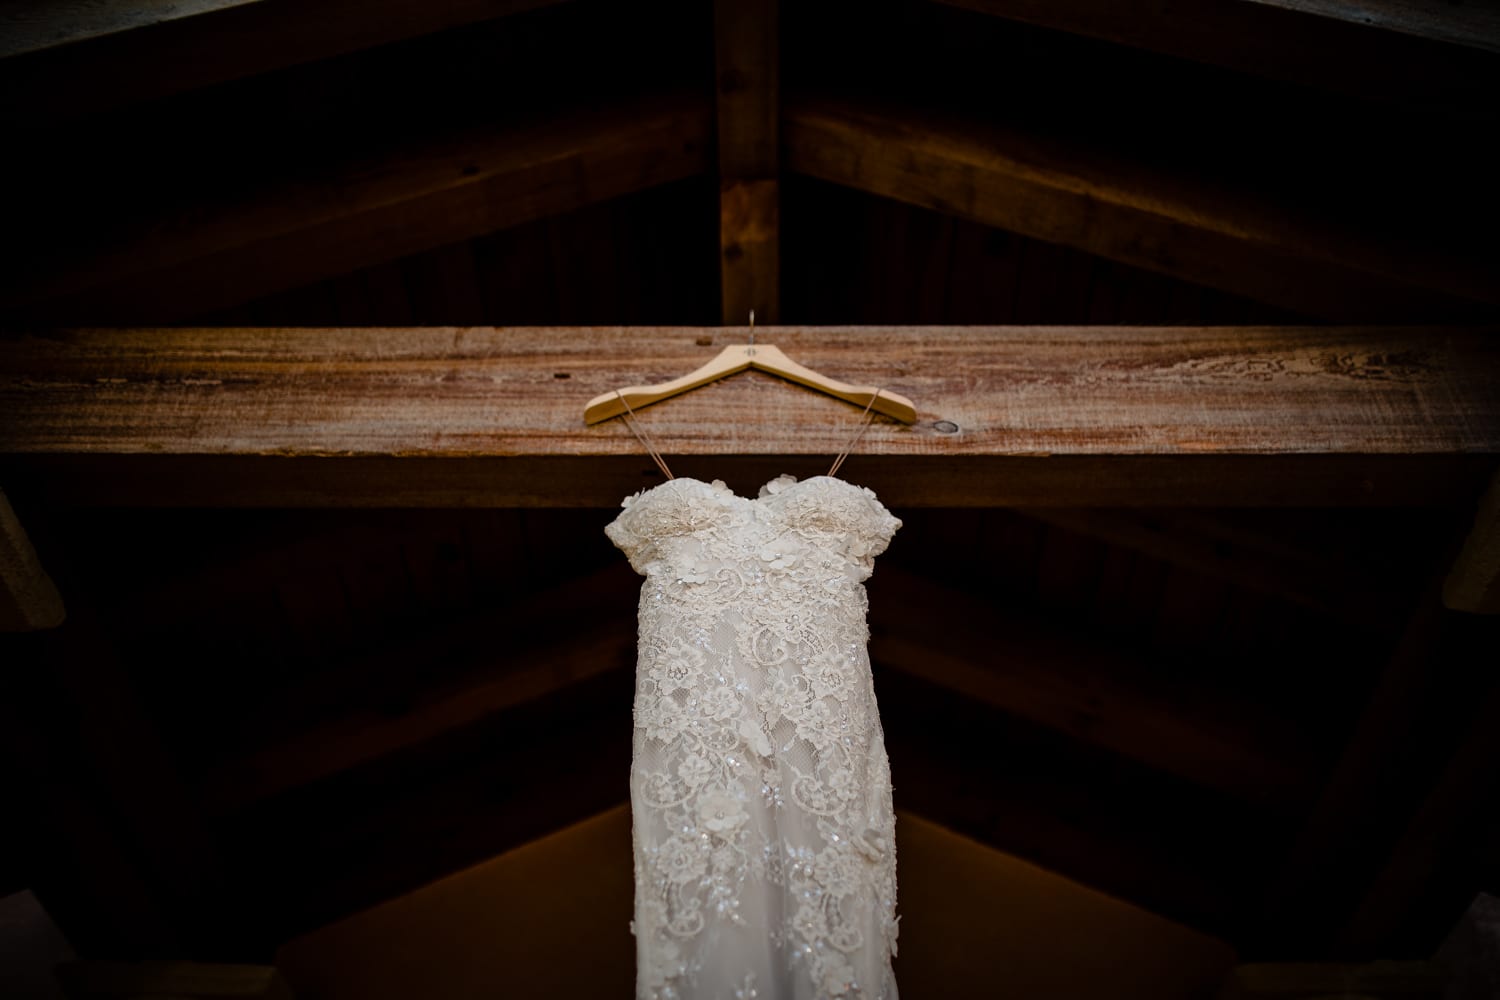 A wedding dress hangs in a barn.